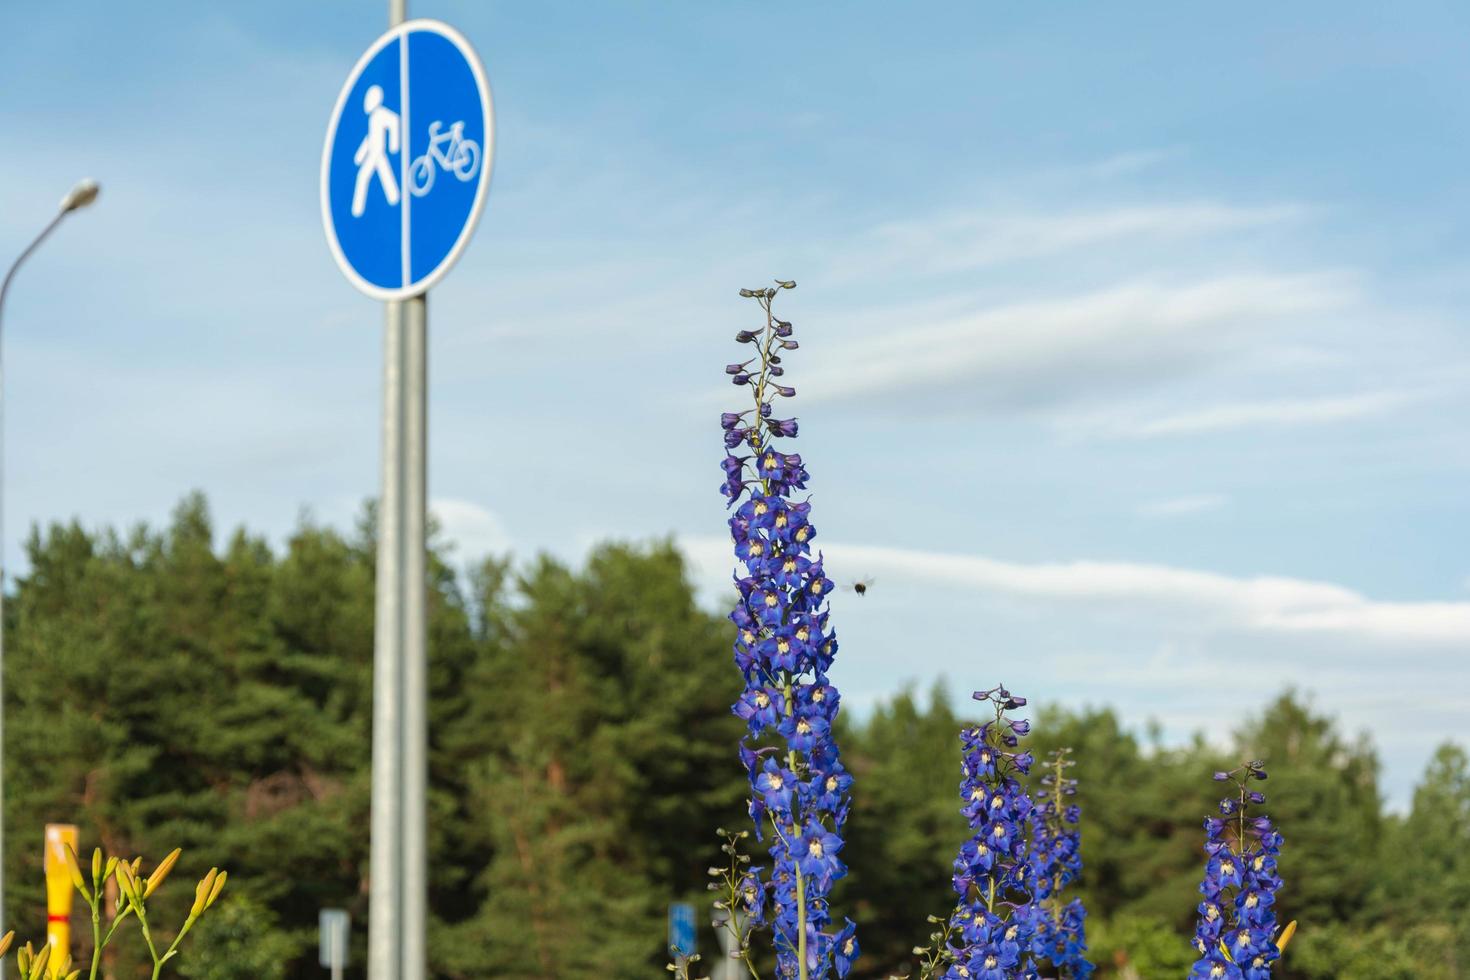 flores de delphinium azuis no fundo de uma ciclovia e uma estrada com ciclistas e carros passando, uma paisagem urbana foto